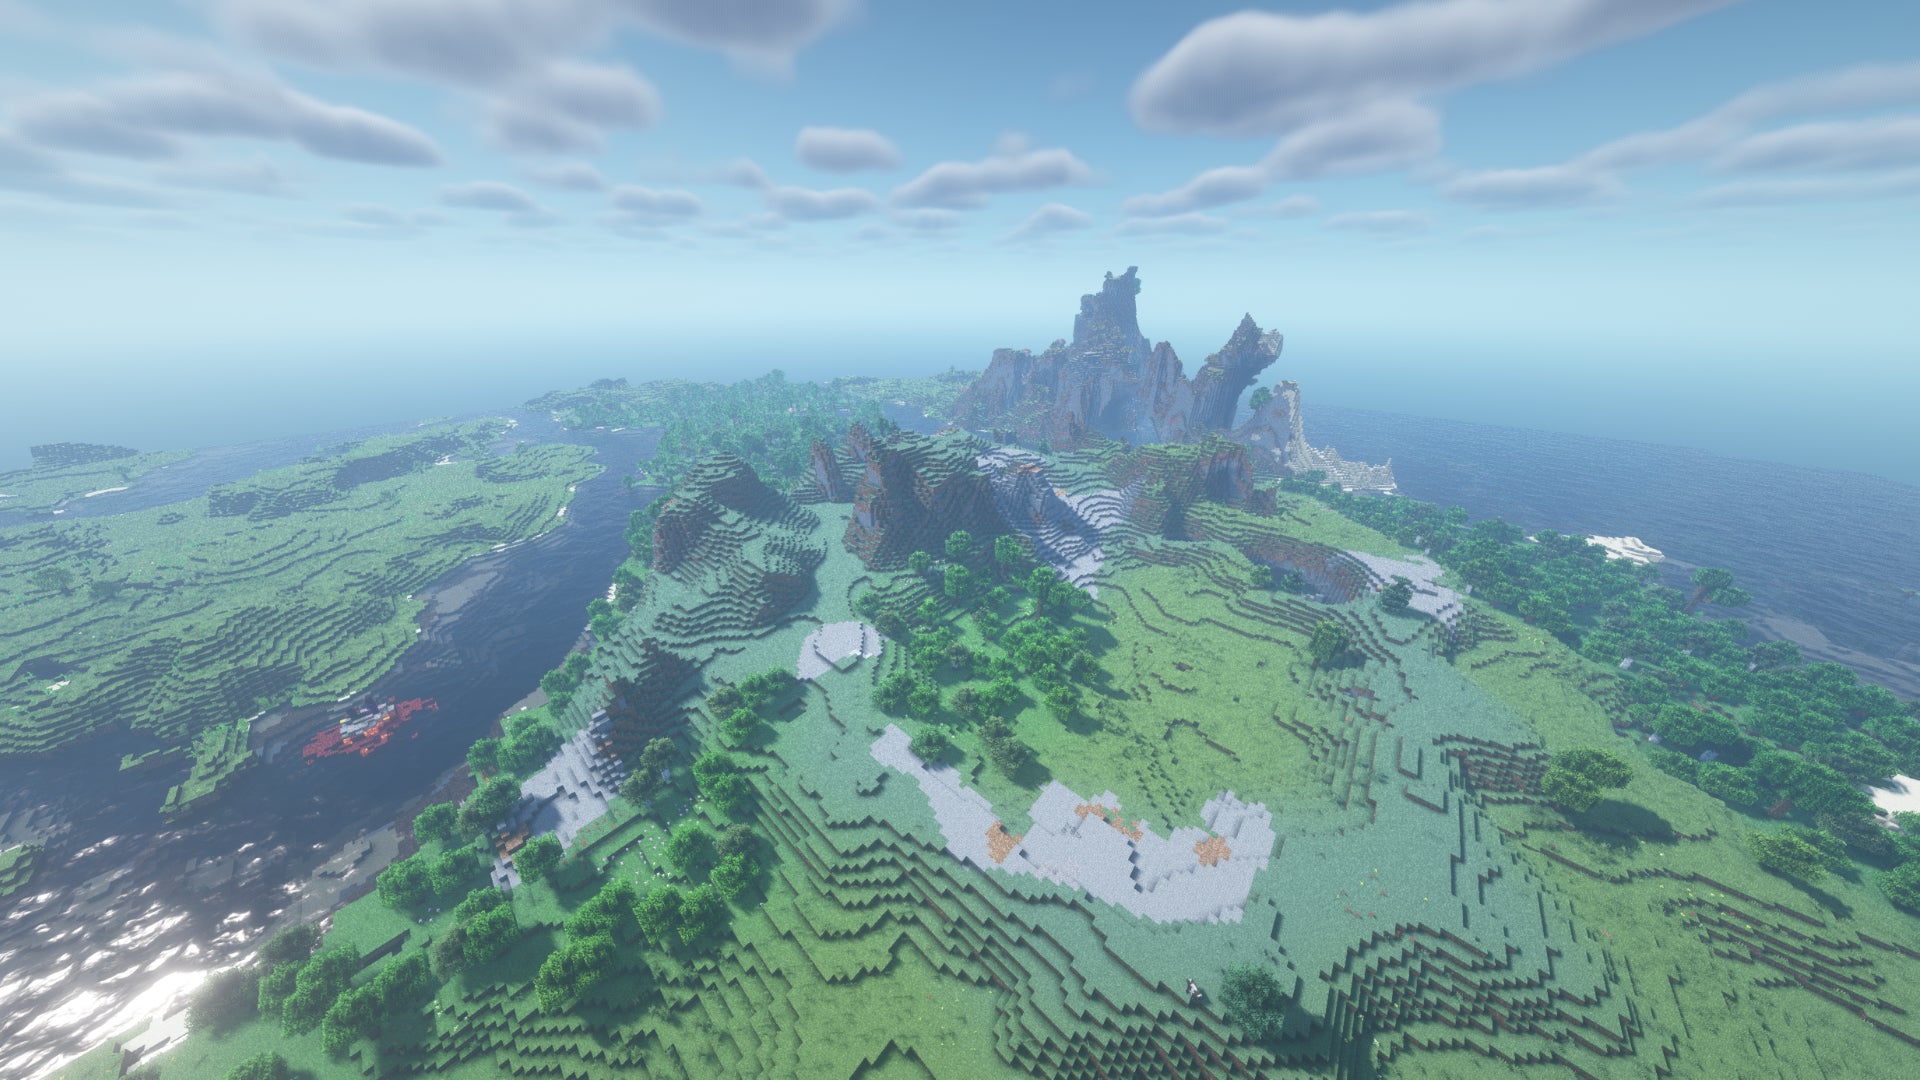 Un vaste paysage Minecraft de forêts, de collines et de plaines rocheuses, avec une chaîne de montagnes côtière au loin.